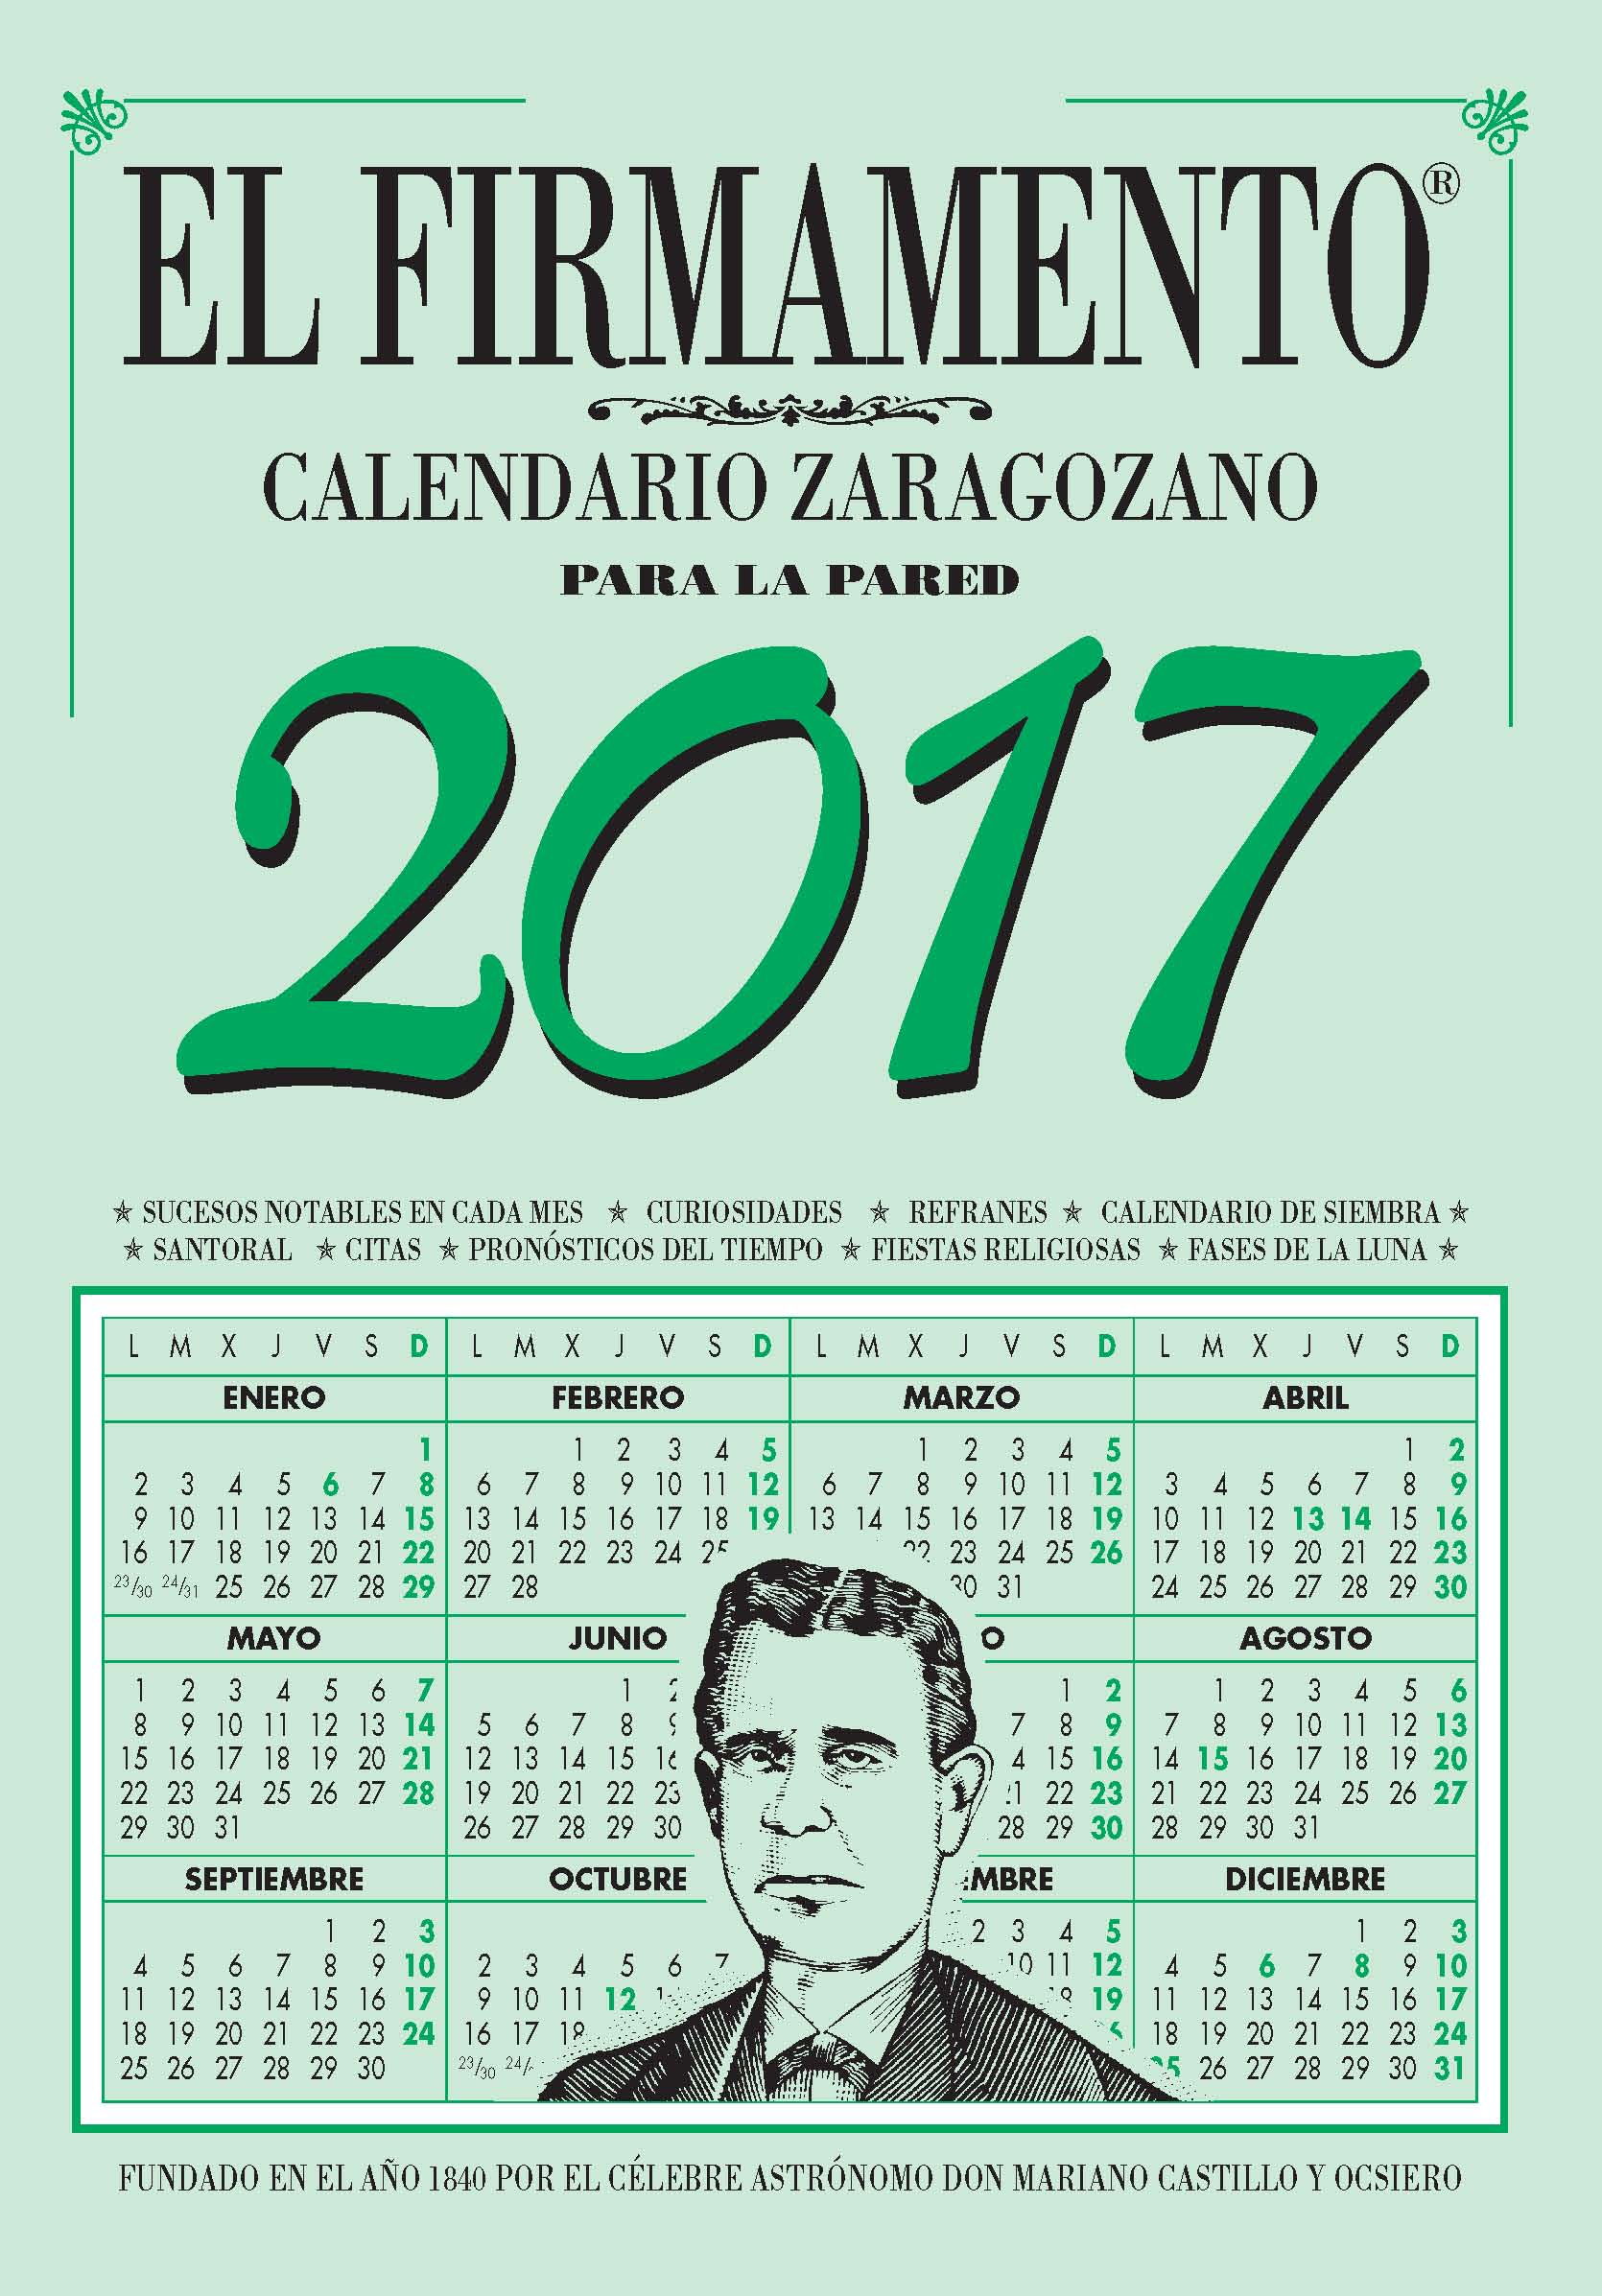 CALENDARIO ZARAGOZANO 2017  PARED EL FIRMAMENTO